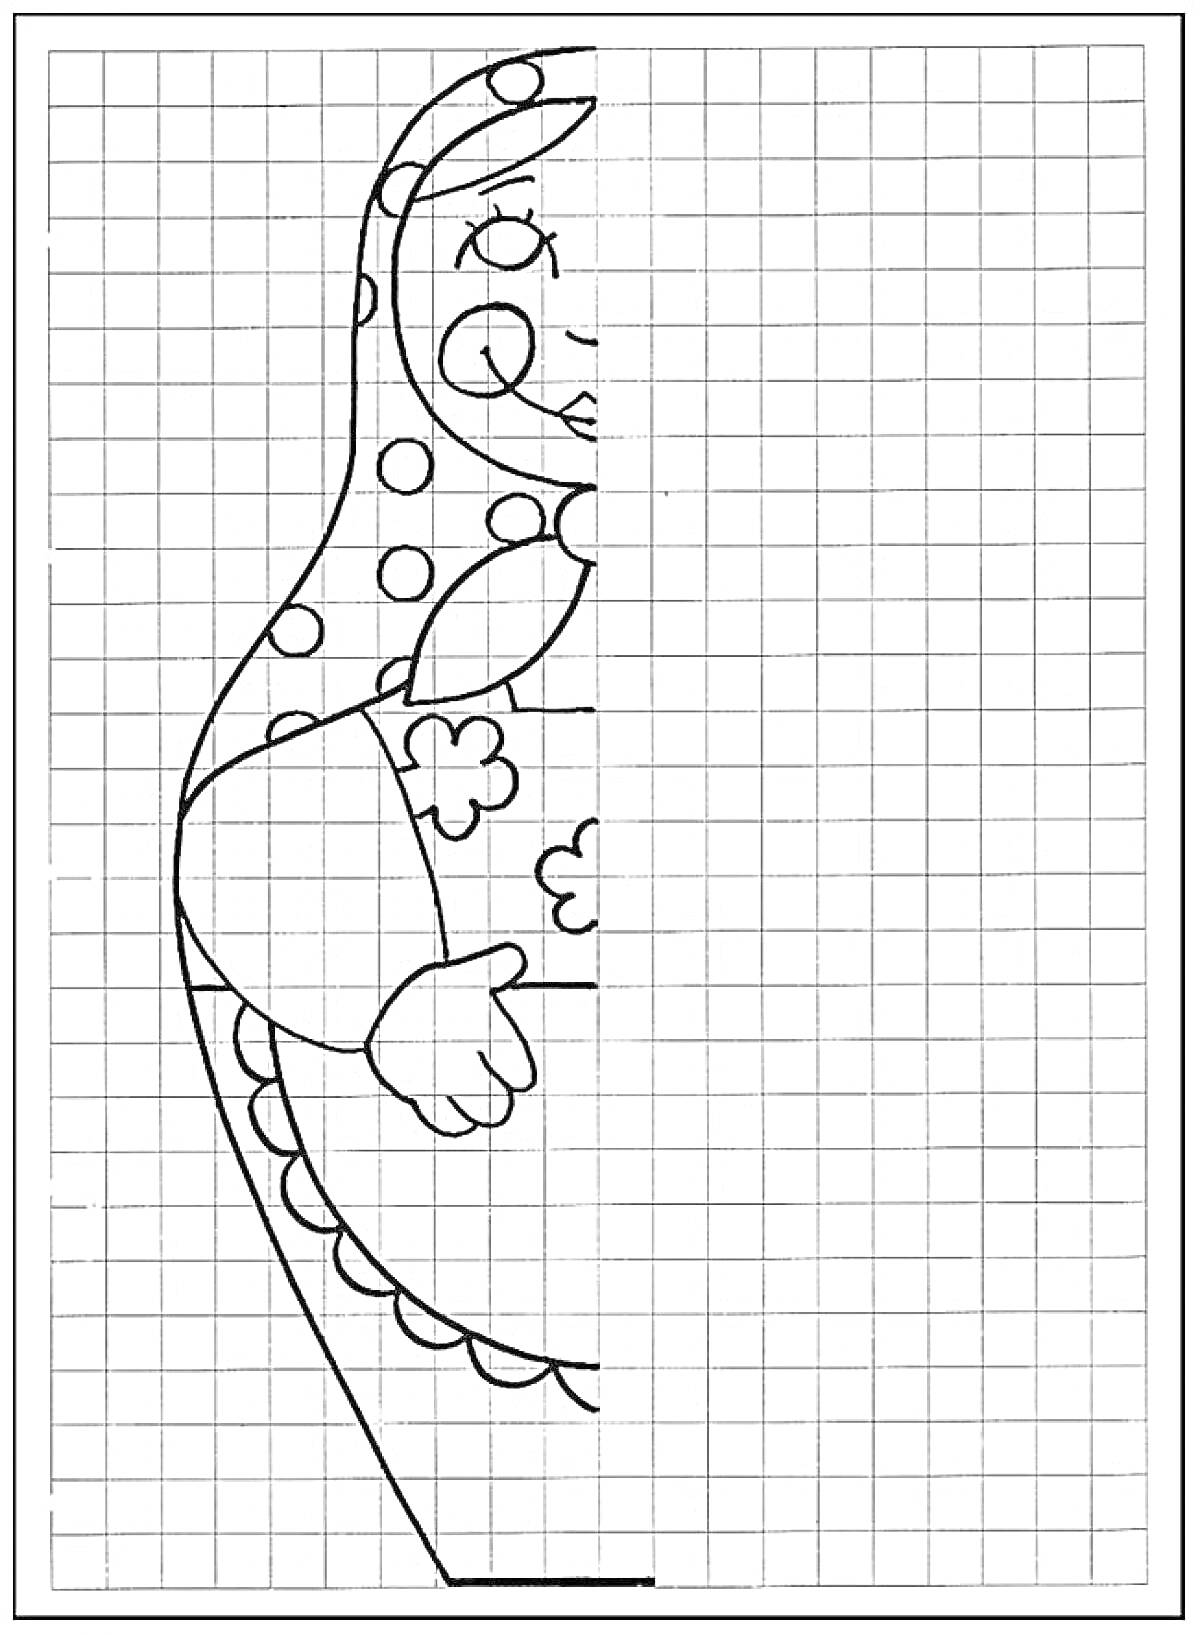 Раскраска дорисовка матрёшки по клеточкам, матрёшка с узорами и цветочным рисунком